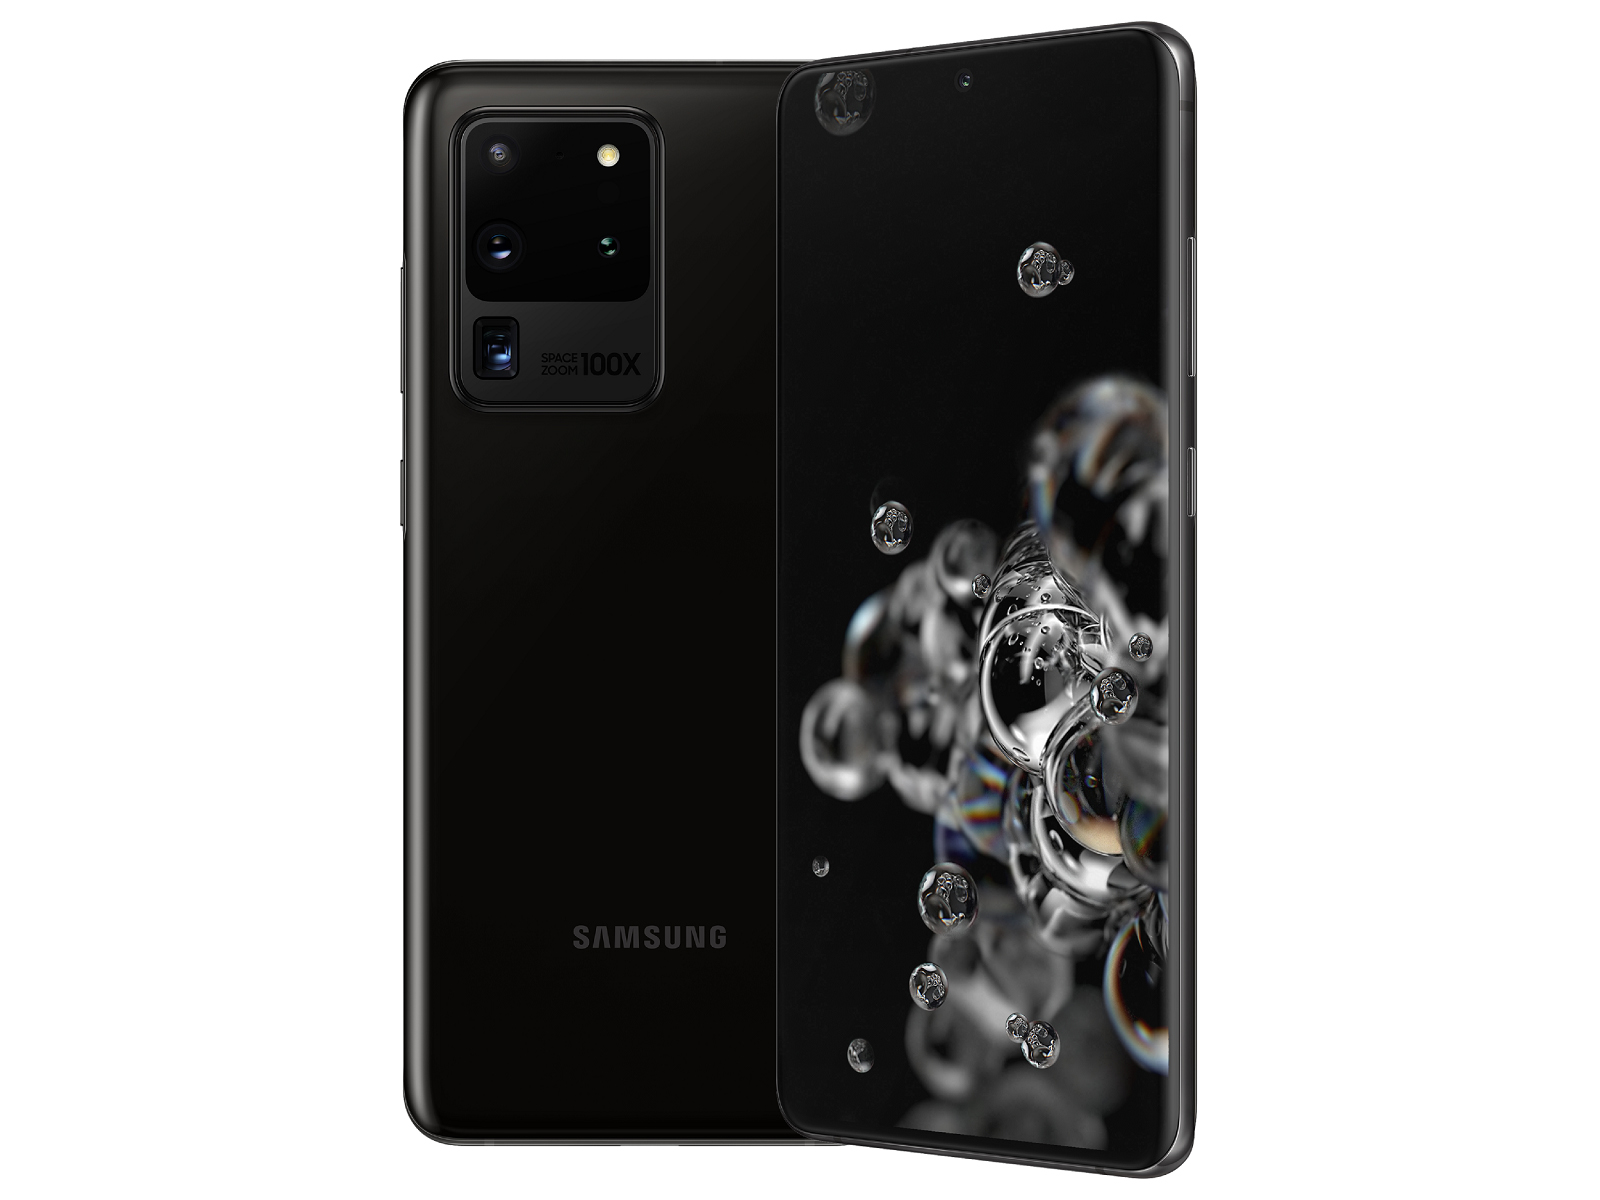 Samsung Galaxy S20 Ultra - Notebookcheck.net External Reviews